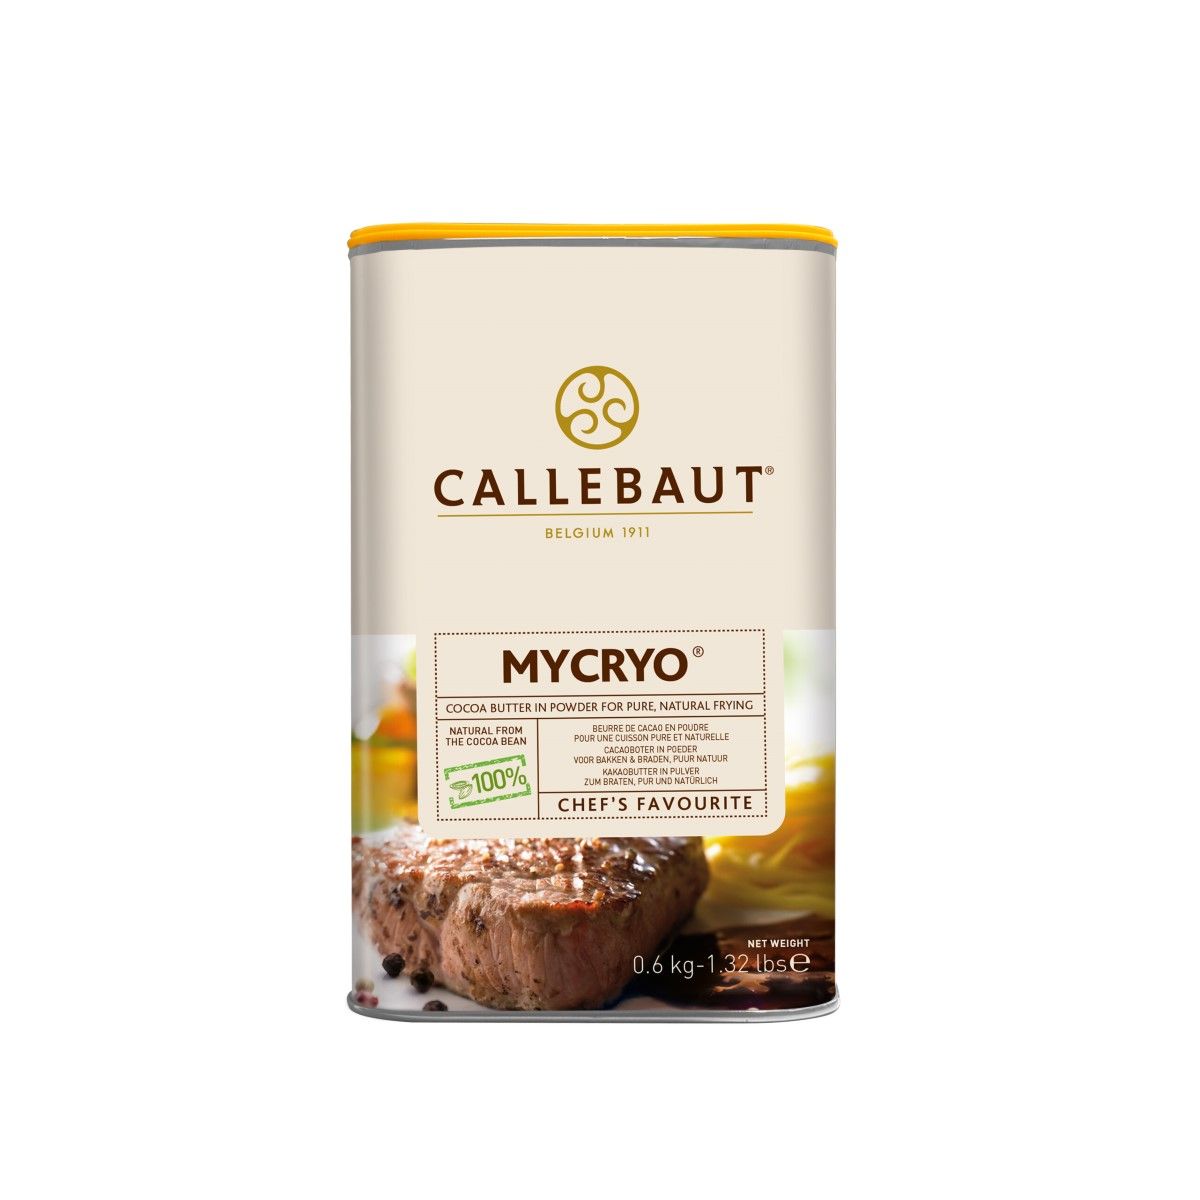 Kakaobutter Callebaut Mycryo 600g